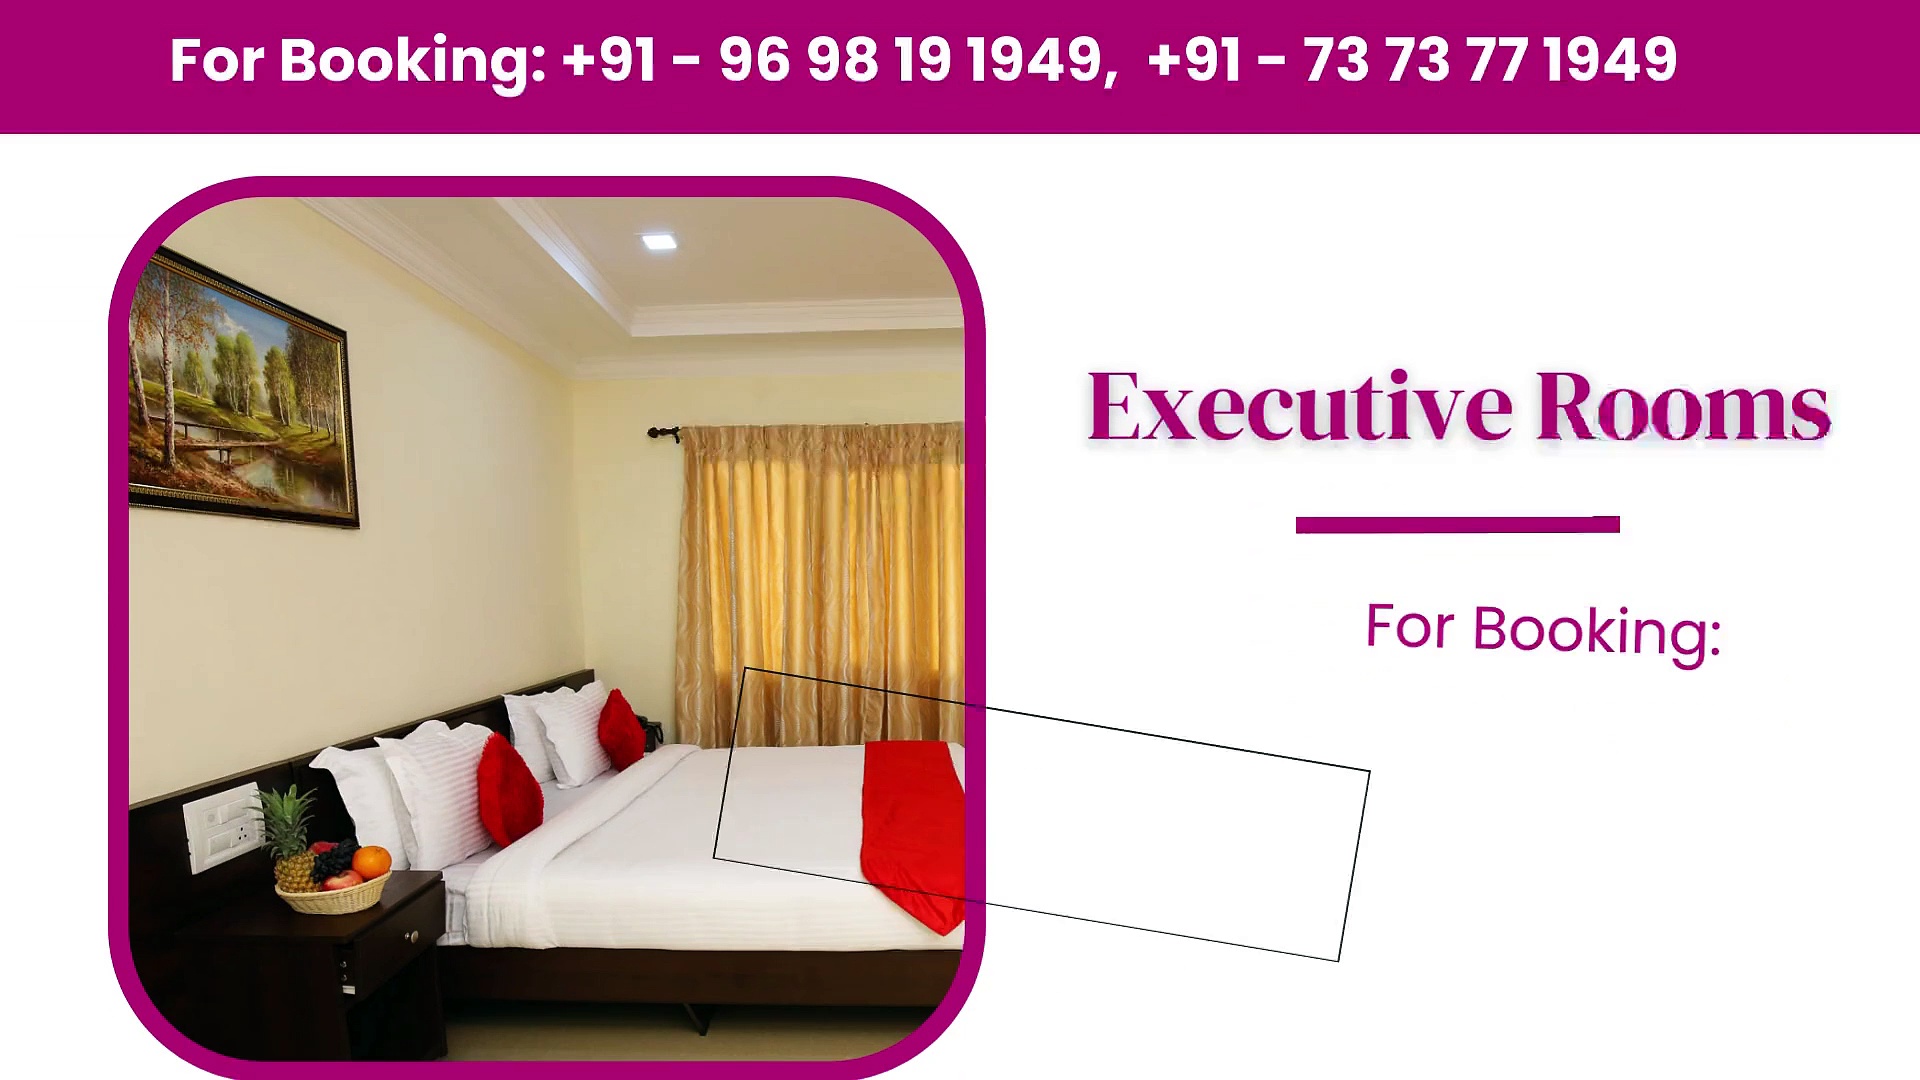 Family Hotels in Madurai | Best Hotels in Madurai | Luxury Hotels in Madura